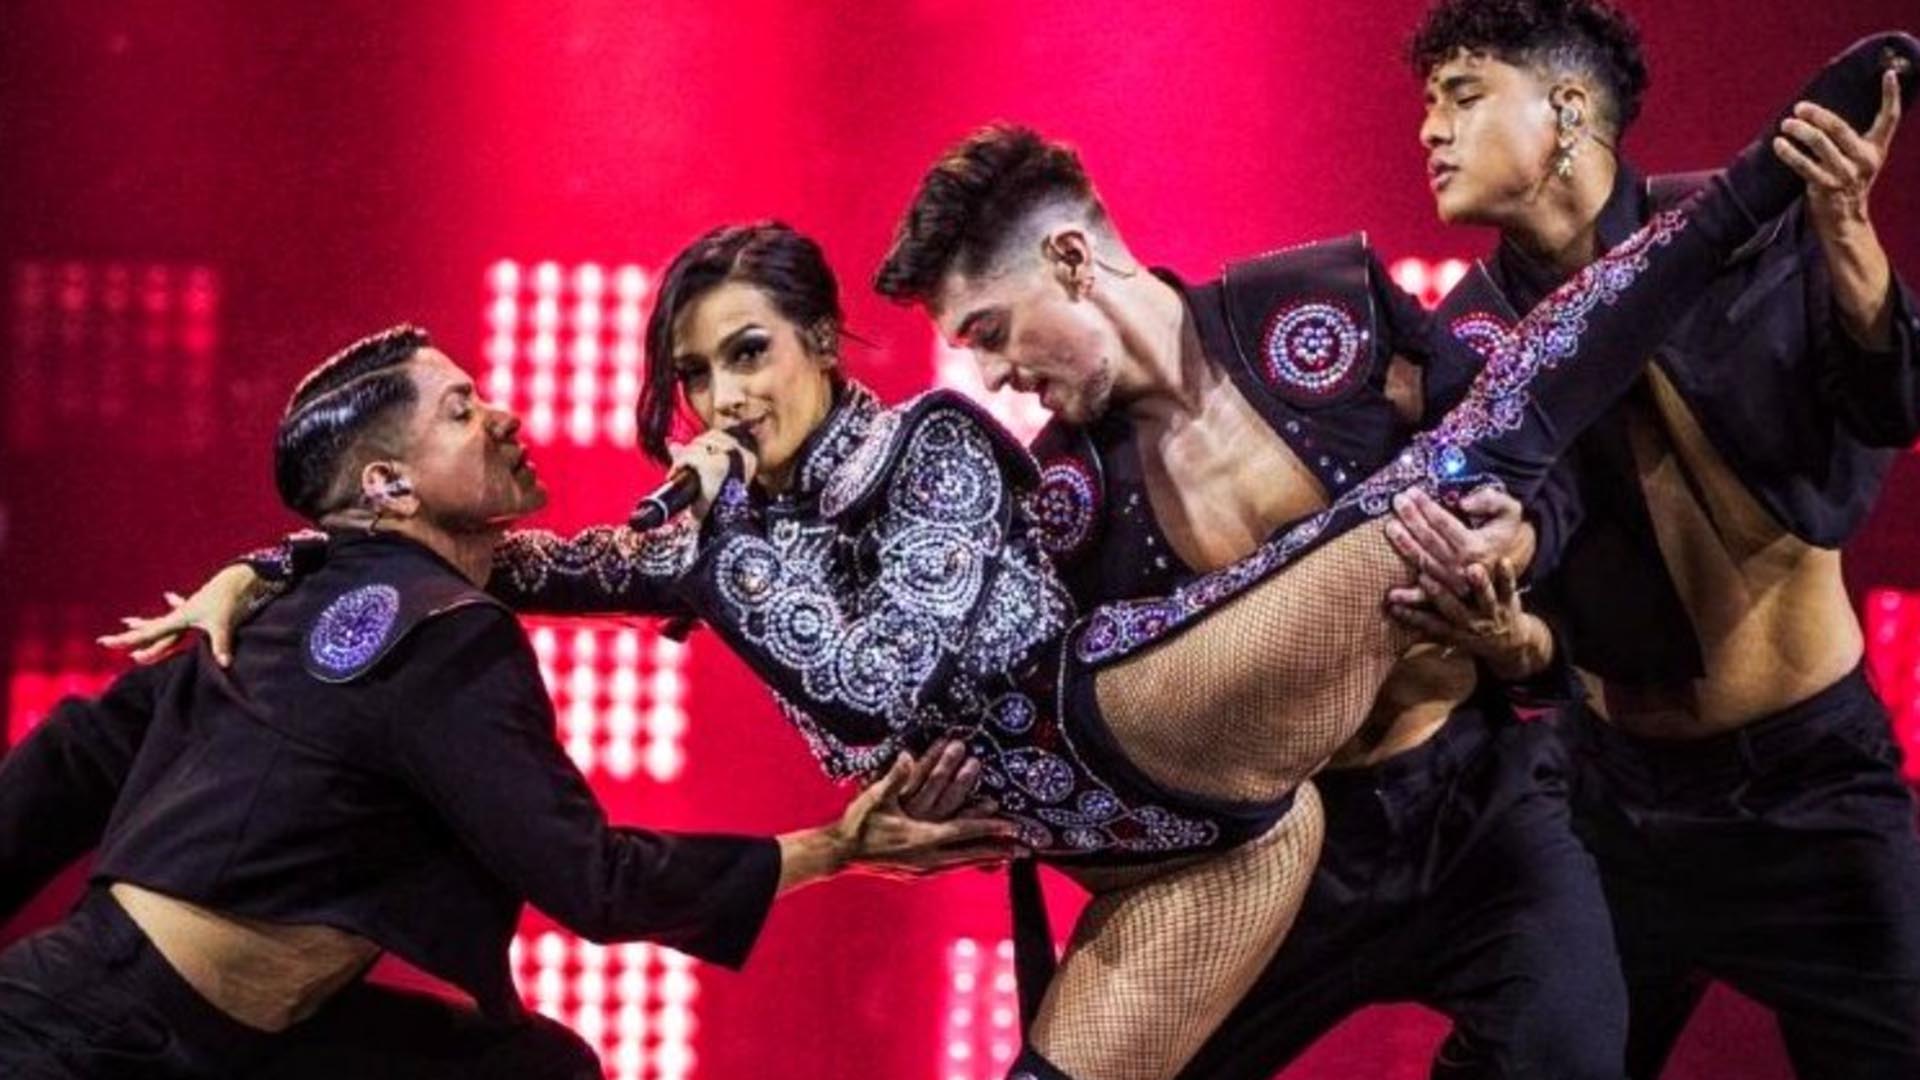 El arrollador espectáculo de Chanel en Eurovisión